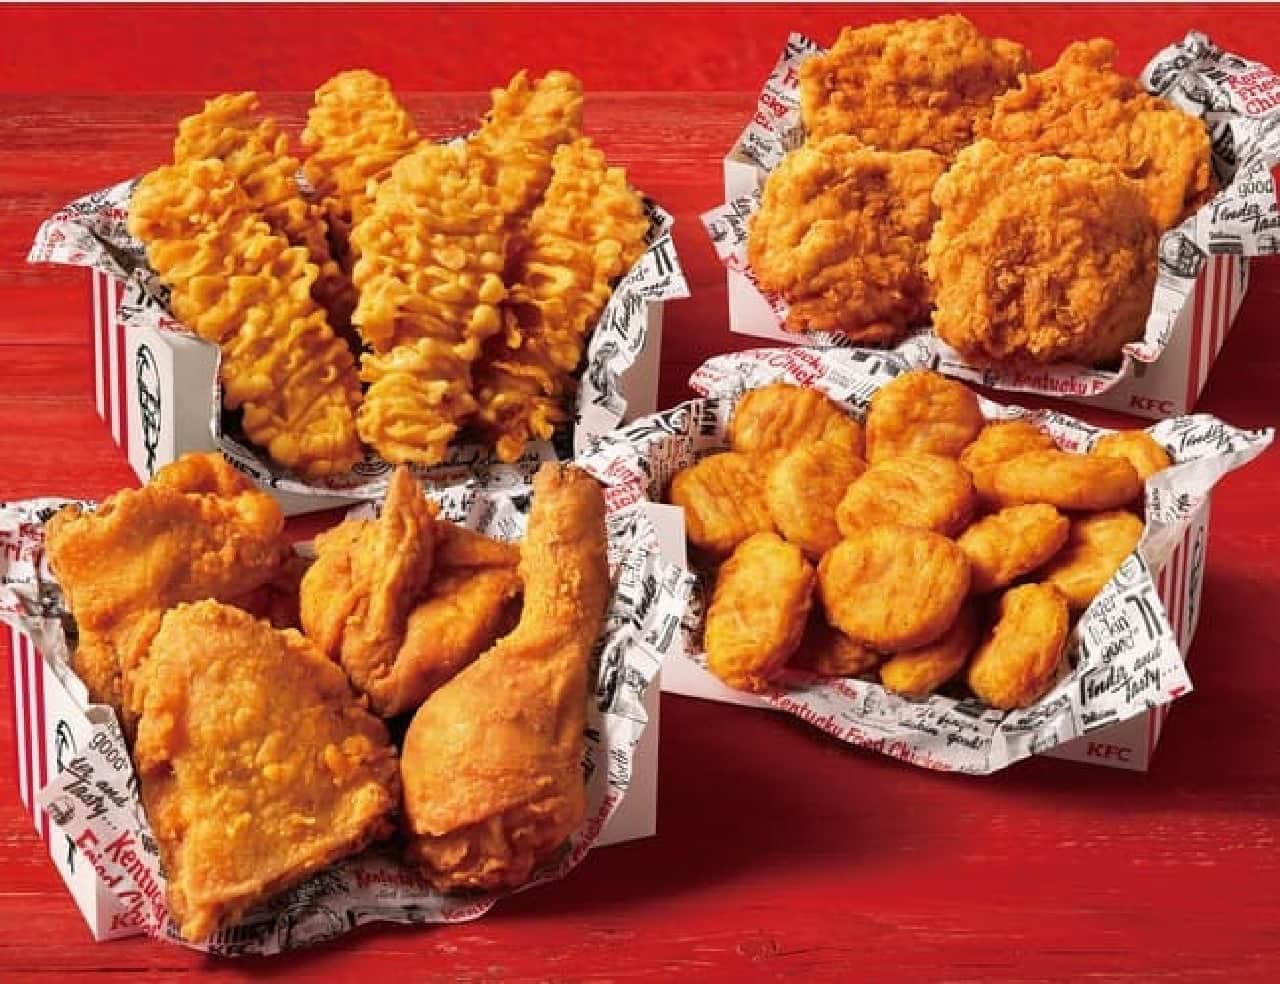 Kentucky Fried Chicken "Share Box"